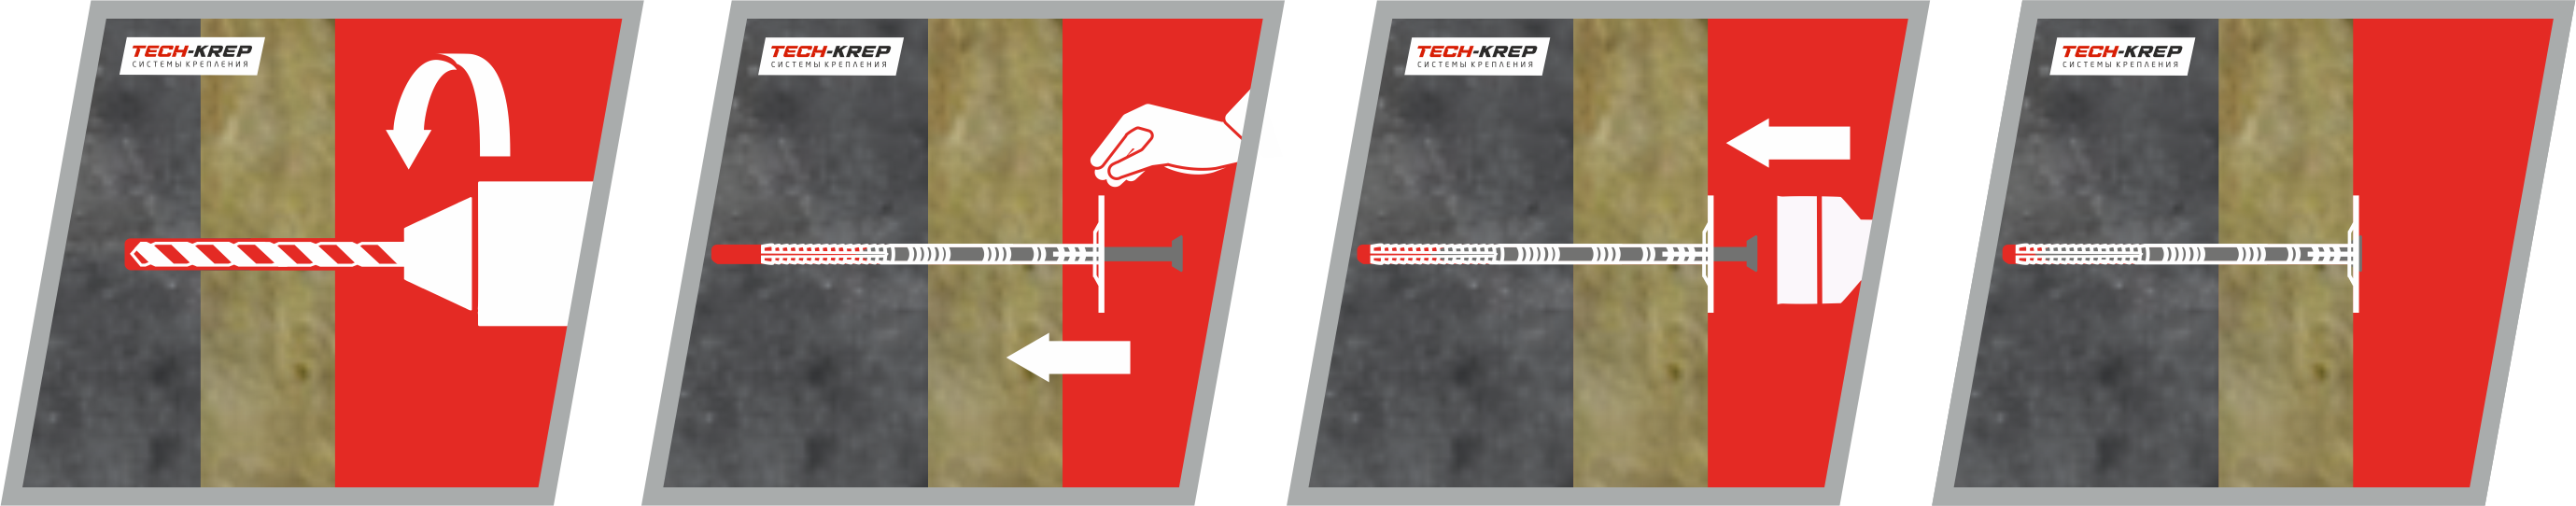 Схема крепления теплоизоляционного материала к бетонному основанию дюбелем IZM-T Tech-KREP PRO